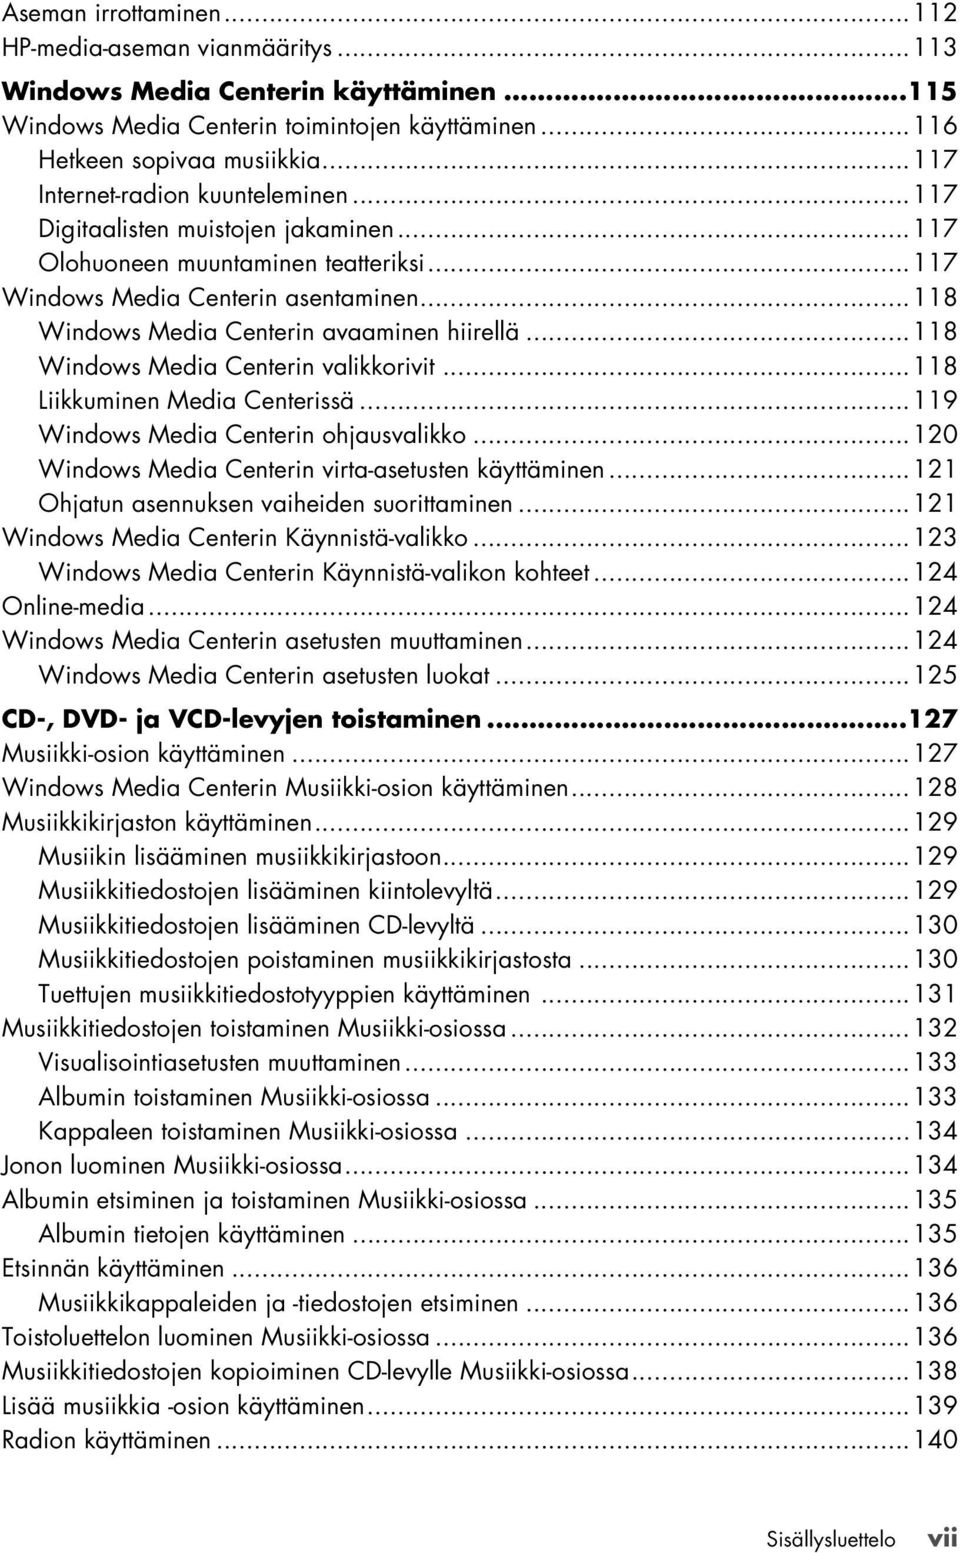 ..118 Windows Media Centerin avaaminen hiirellä...118 Windows Media Centerin valikkorivit...118 Liikkuminen Media Centerissä...119 Windows Media Centerin ohjausvalikko.